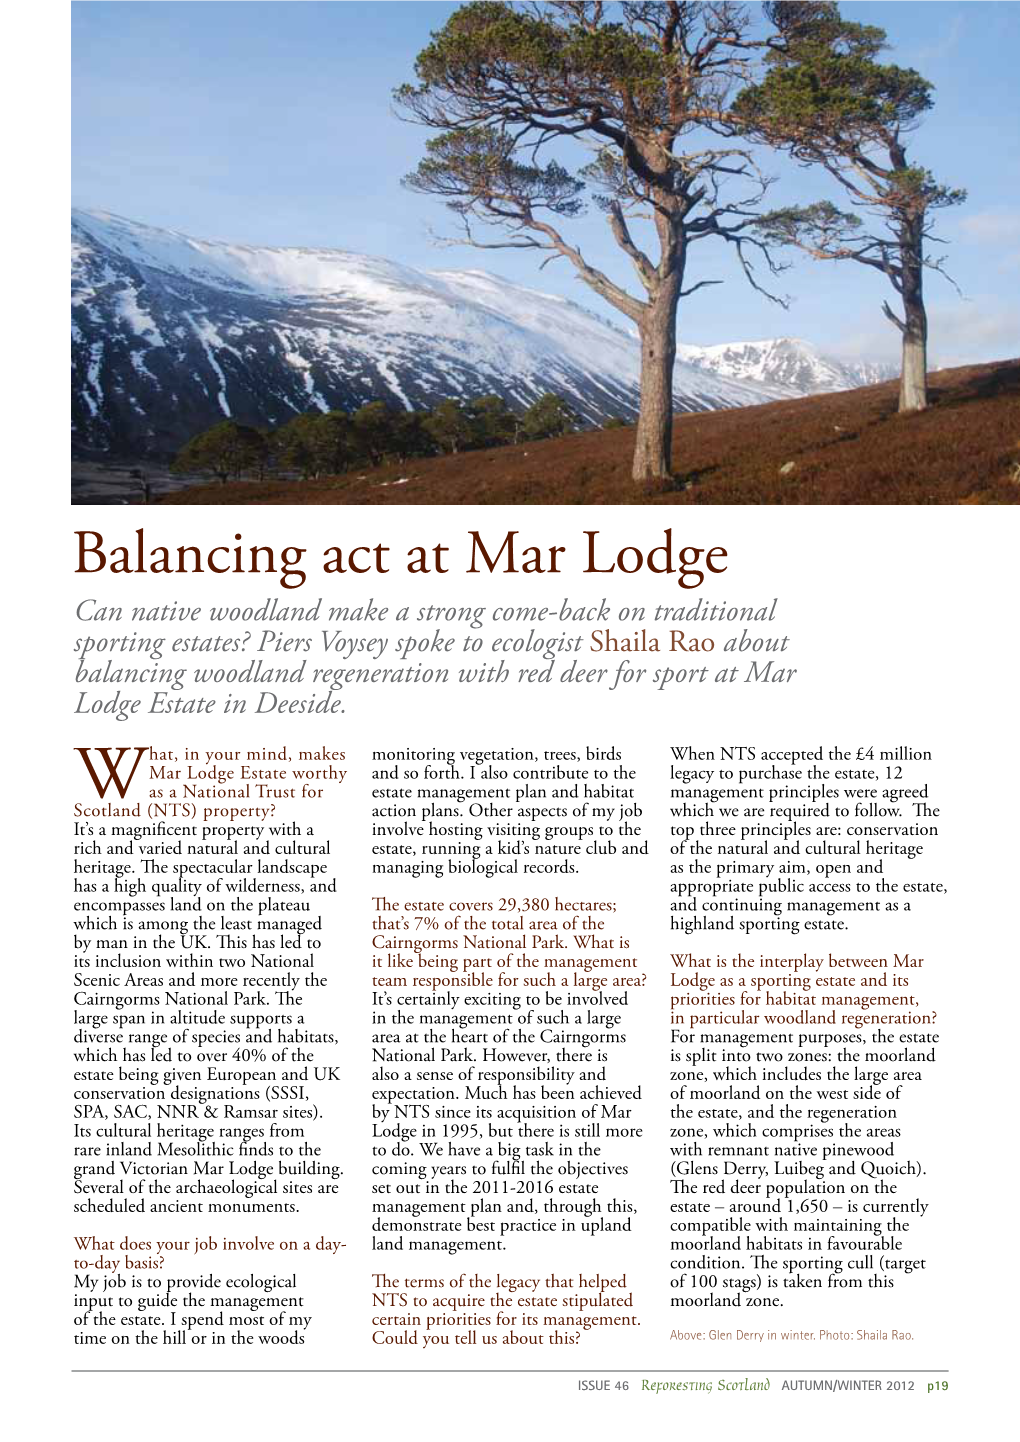 Balancing Act at Mar Lodge